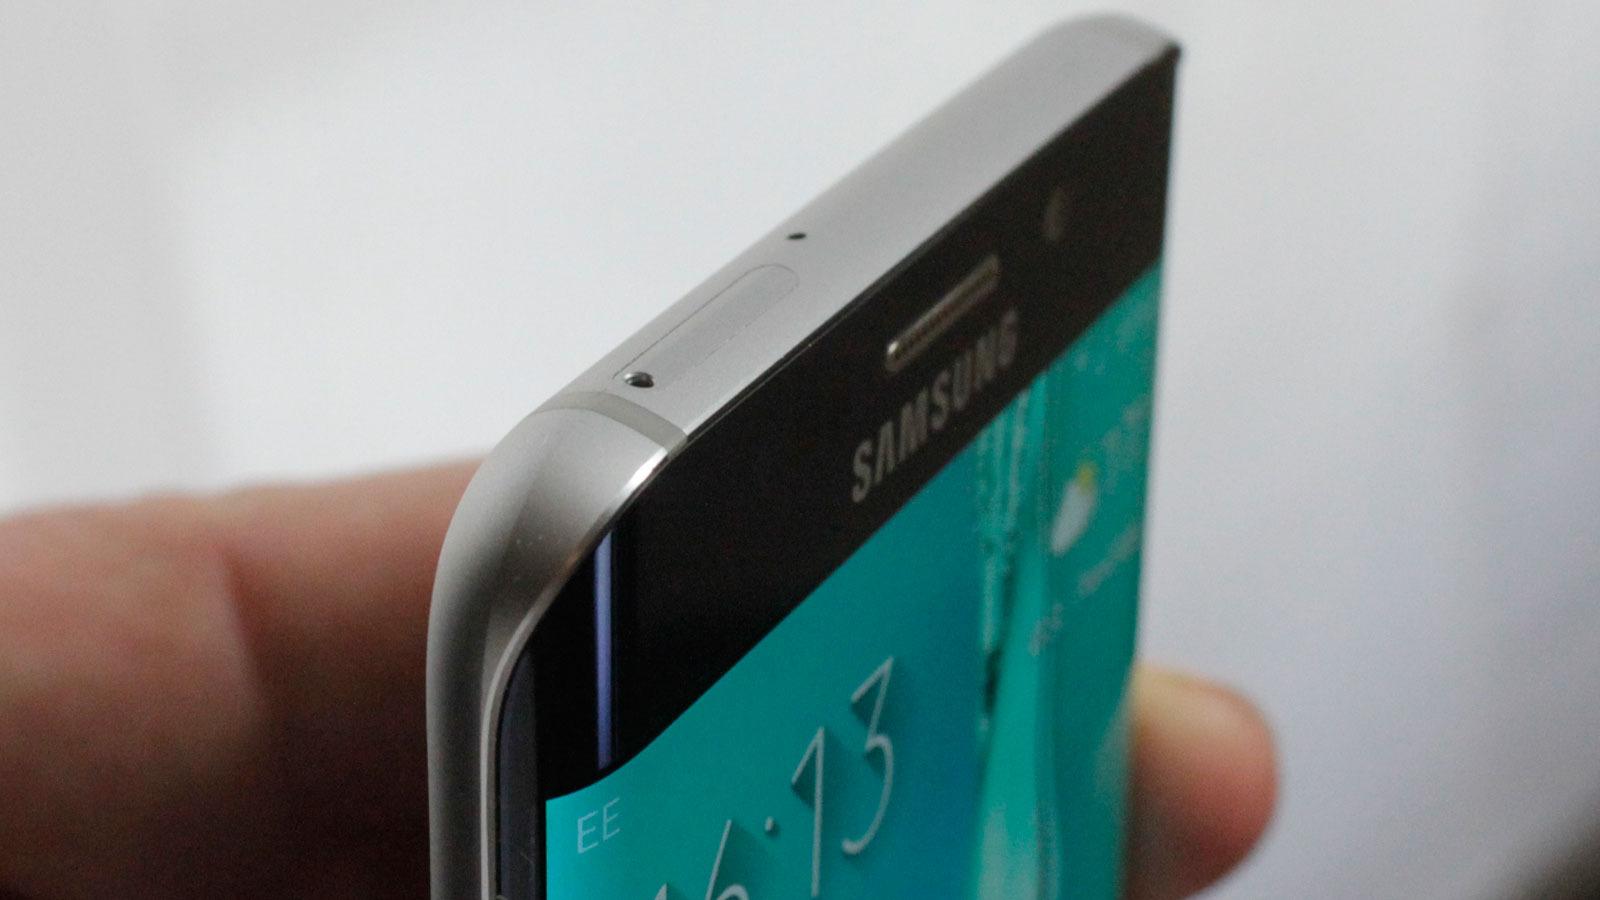 Metallet i Galaxy S6 Edge+ er sterkere enn tilsvarende i Galaxy S6 Edge. (Foto: Espen Irwing Swang, Tek.no)